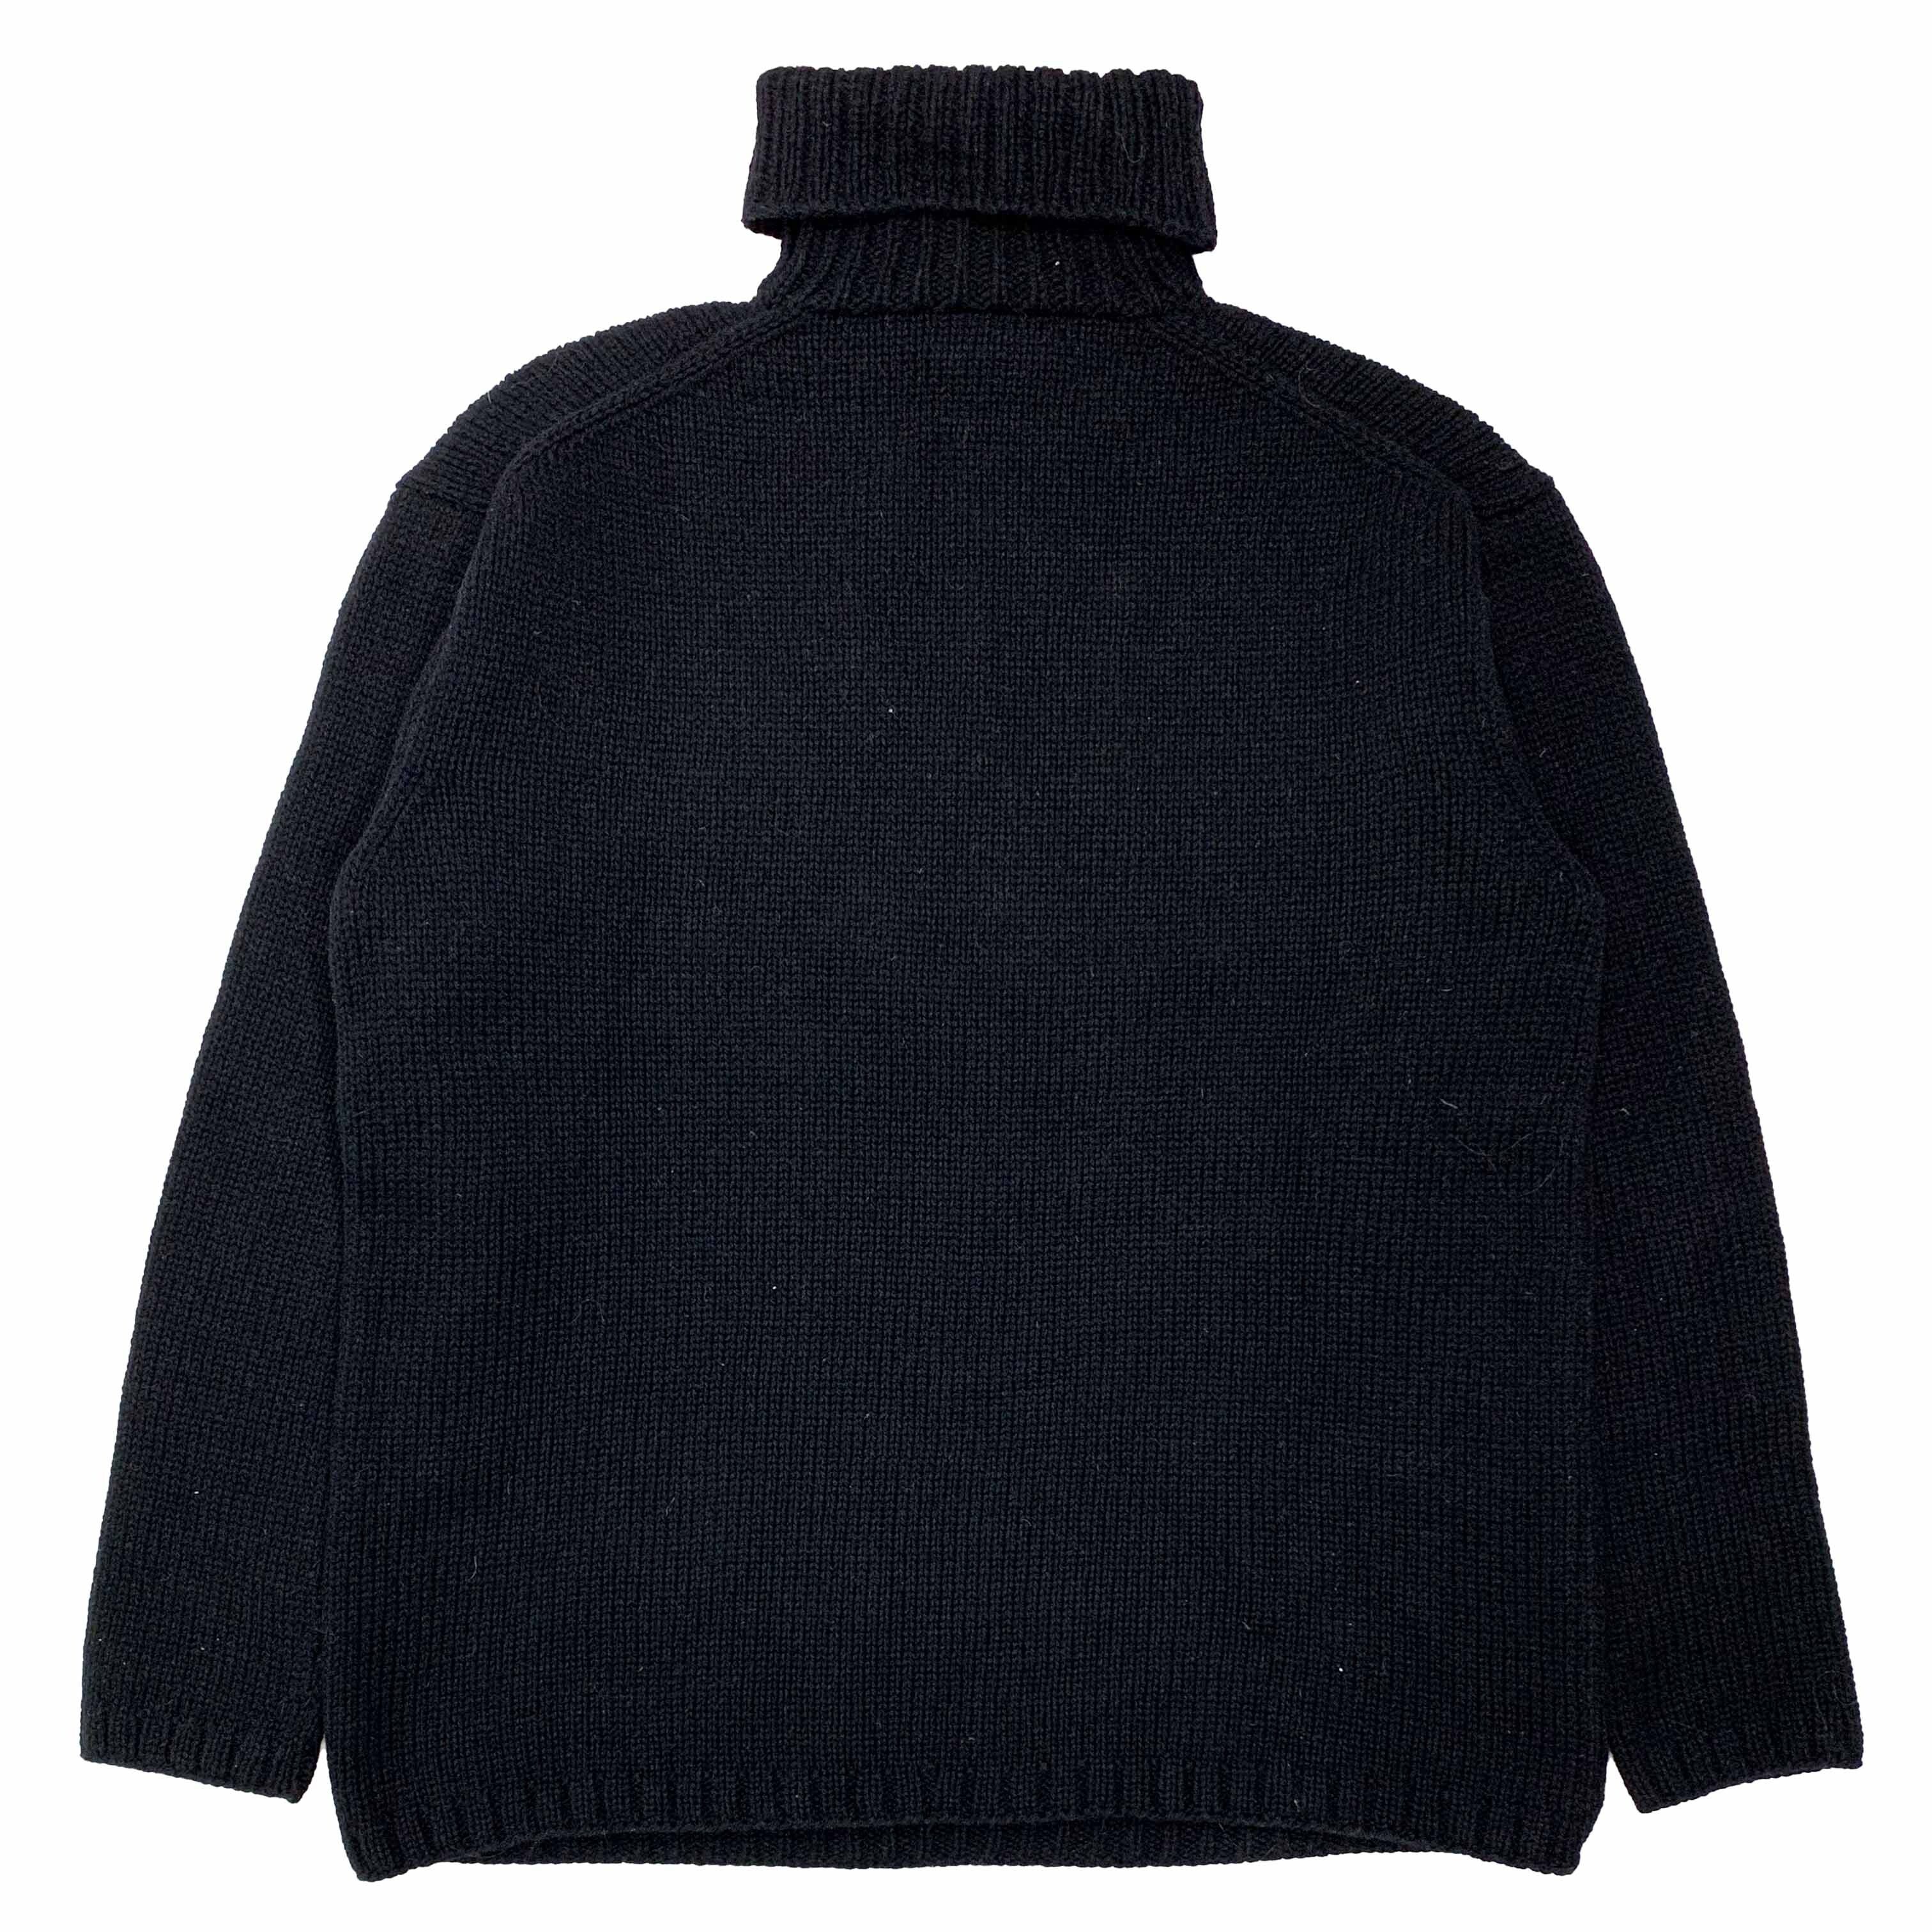 うのにもお得な情報満載 L supreme yohji yamamoto sweater Black ...